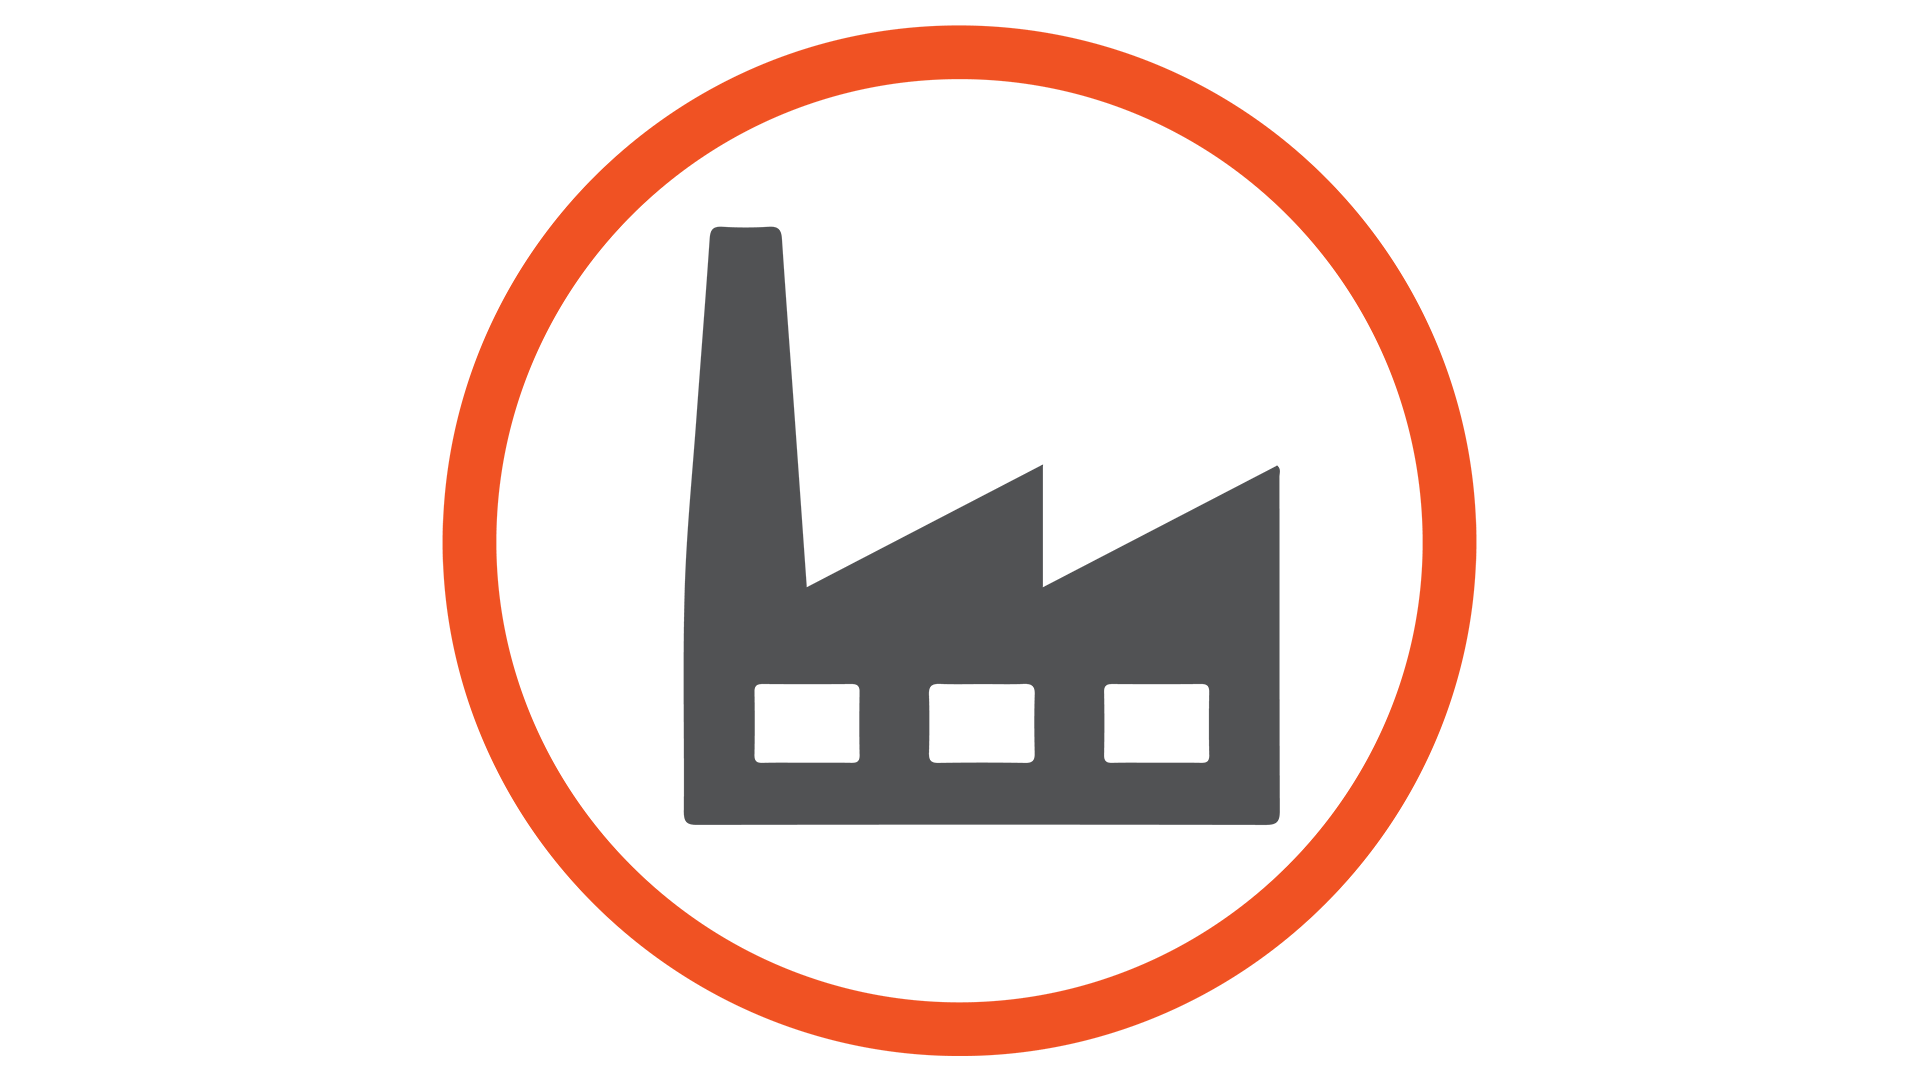 Industrial_Symbols(1080p)